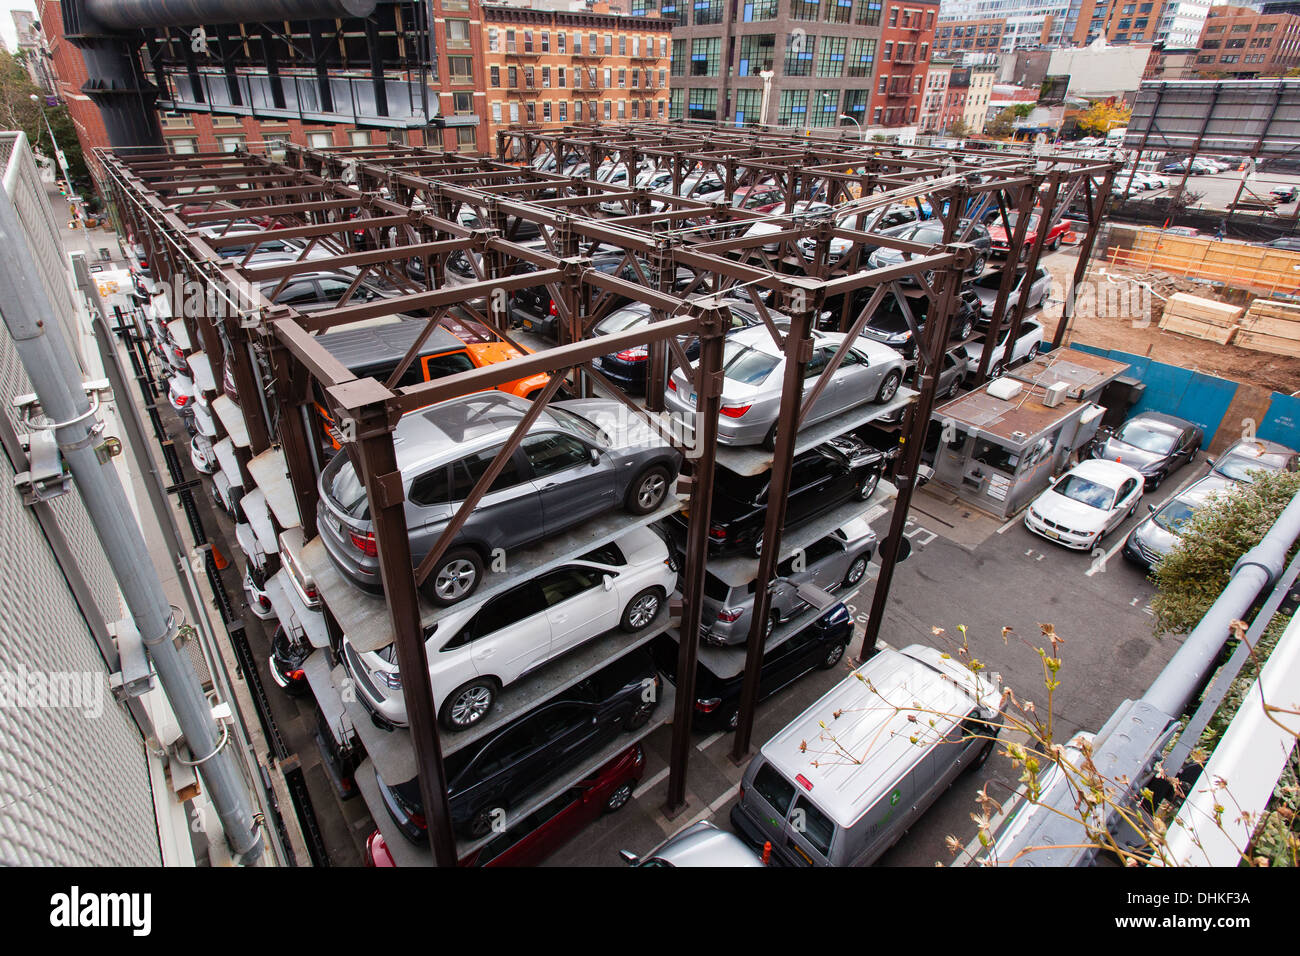 Automatisierte Fahrzeug Storage System Parkplatz. Aus der High Line, Chelsea New York City, Vereinigte Staaten von Amerika betrachtet. Stockfoto